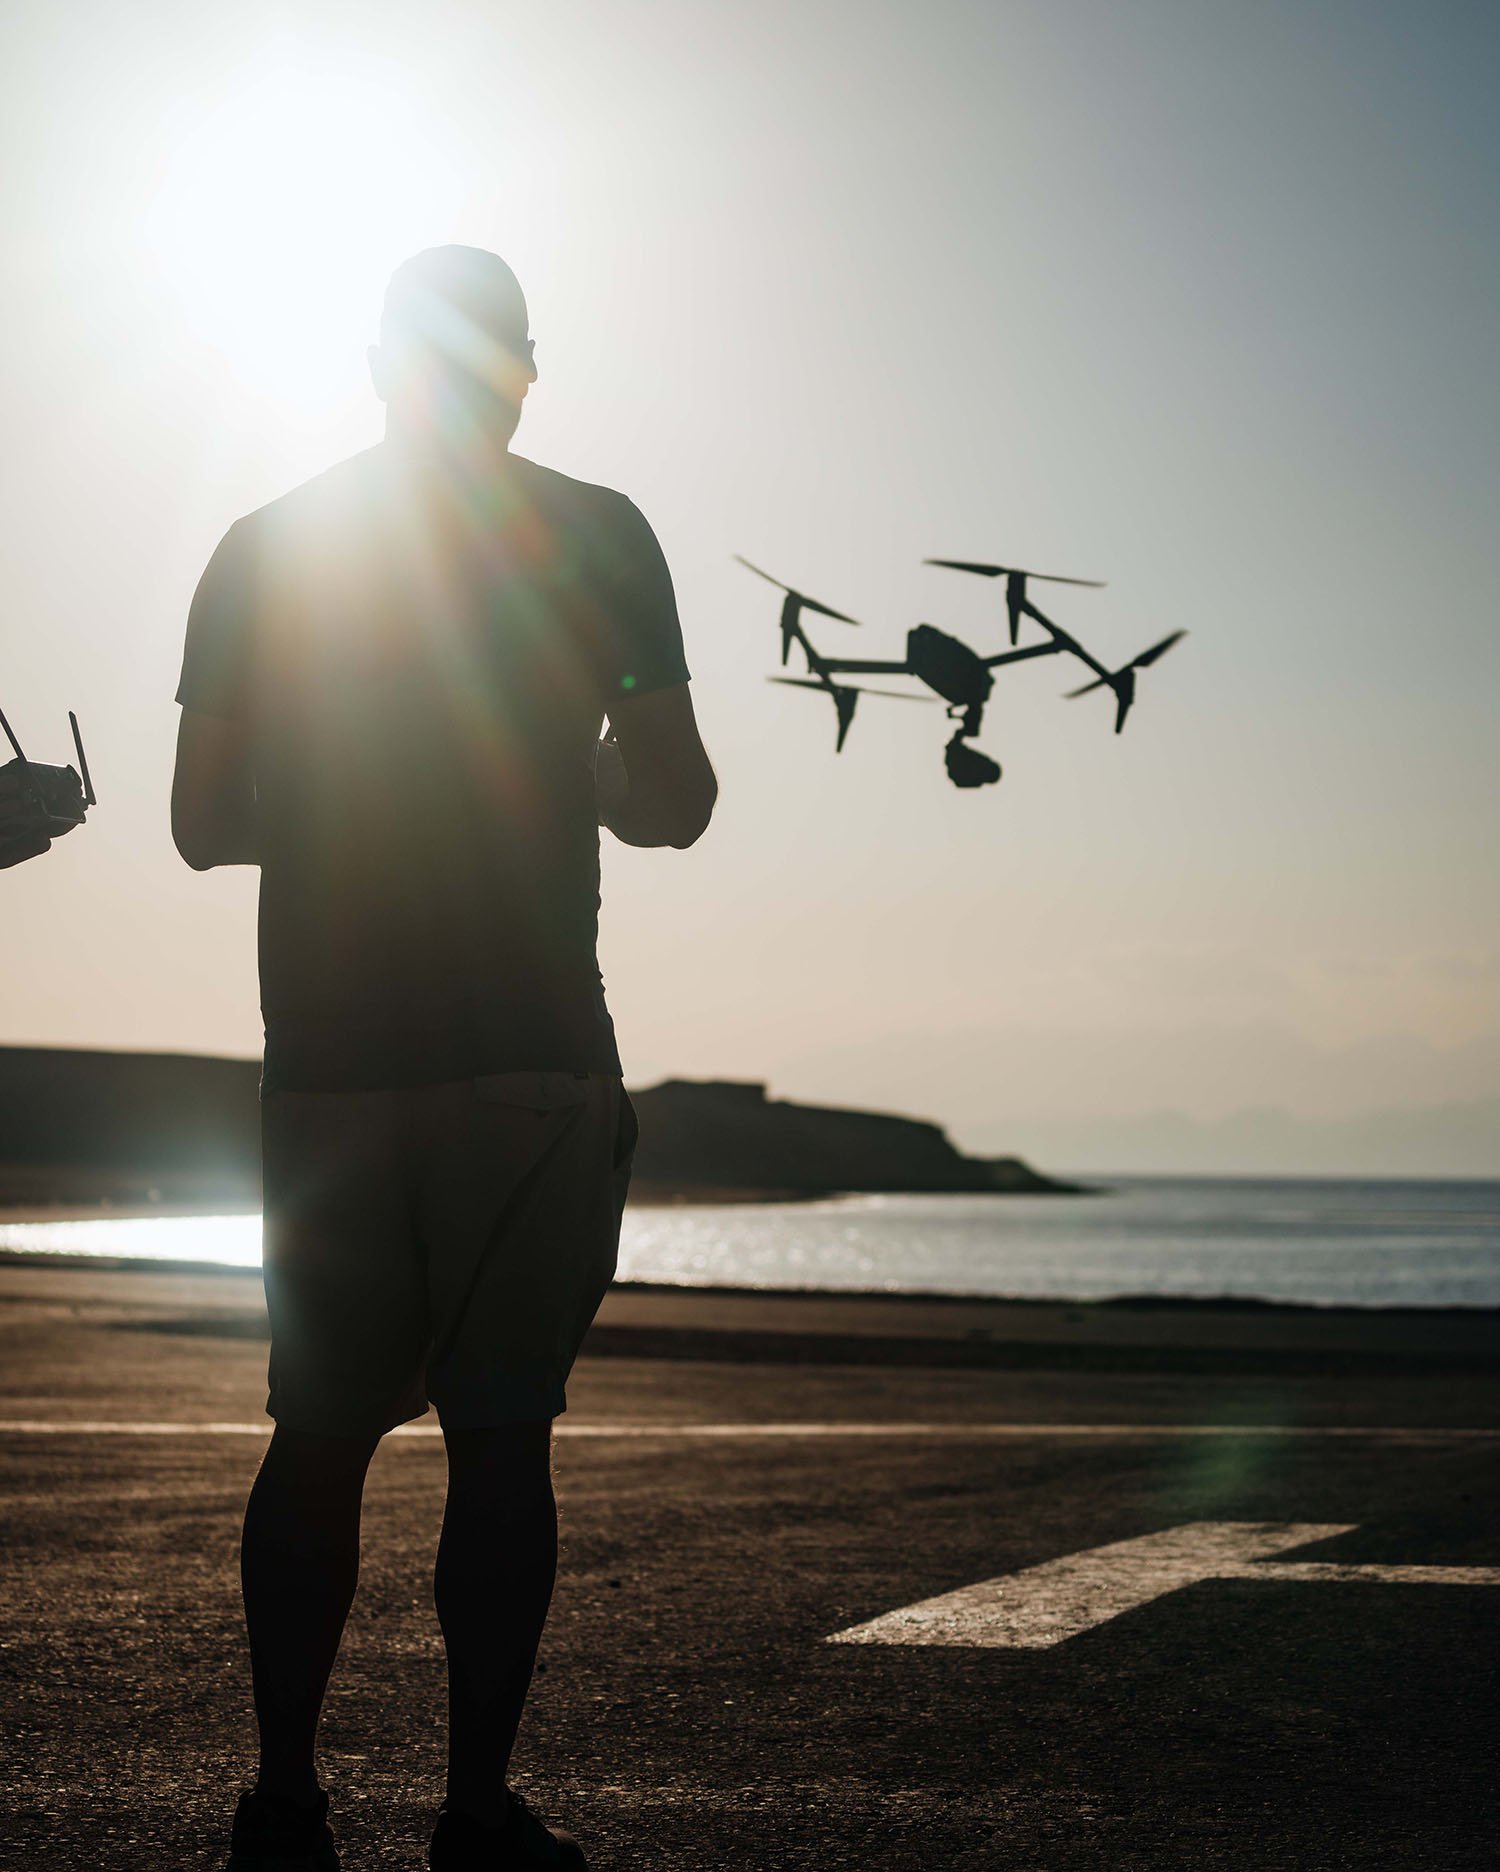  Operador de dron pilotando un dron sobre una playa de arena, captando imágenes aéreas de la costa. 